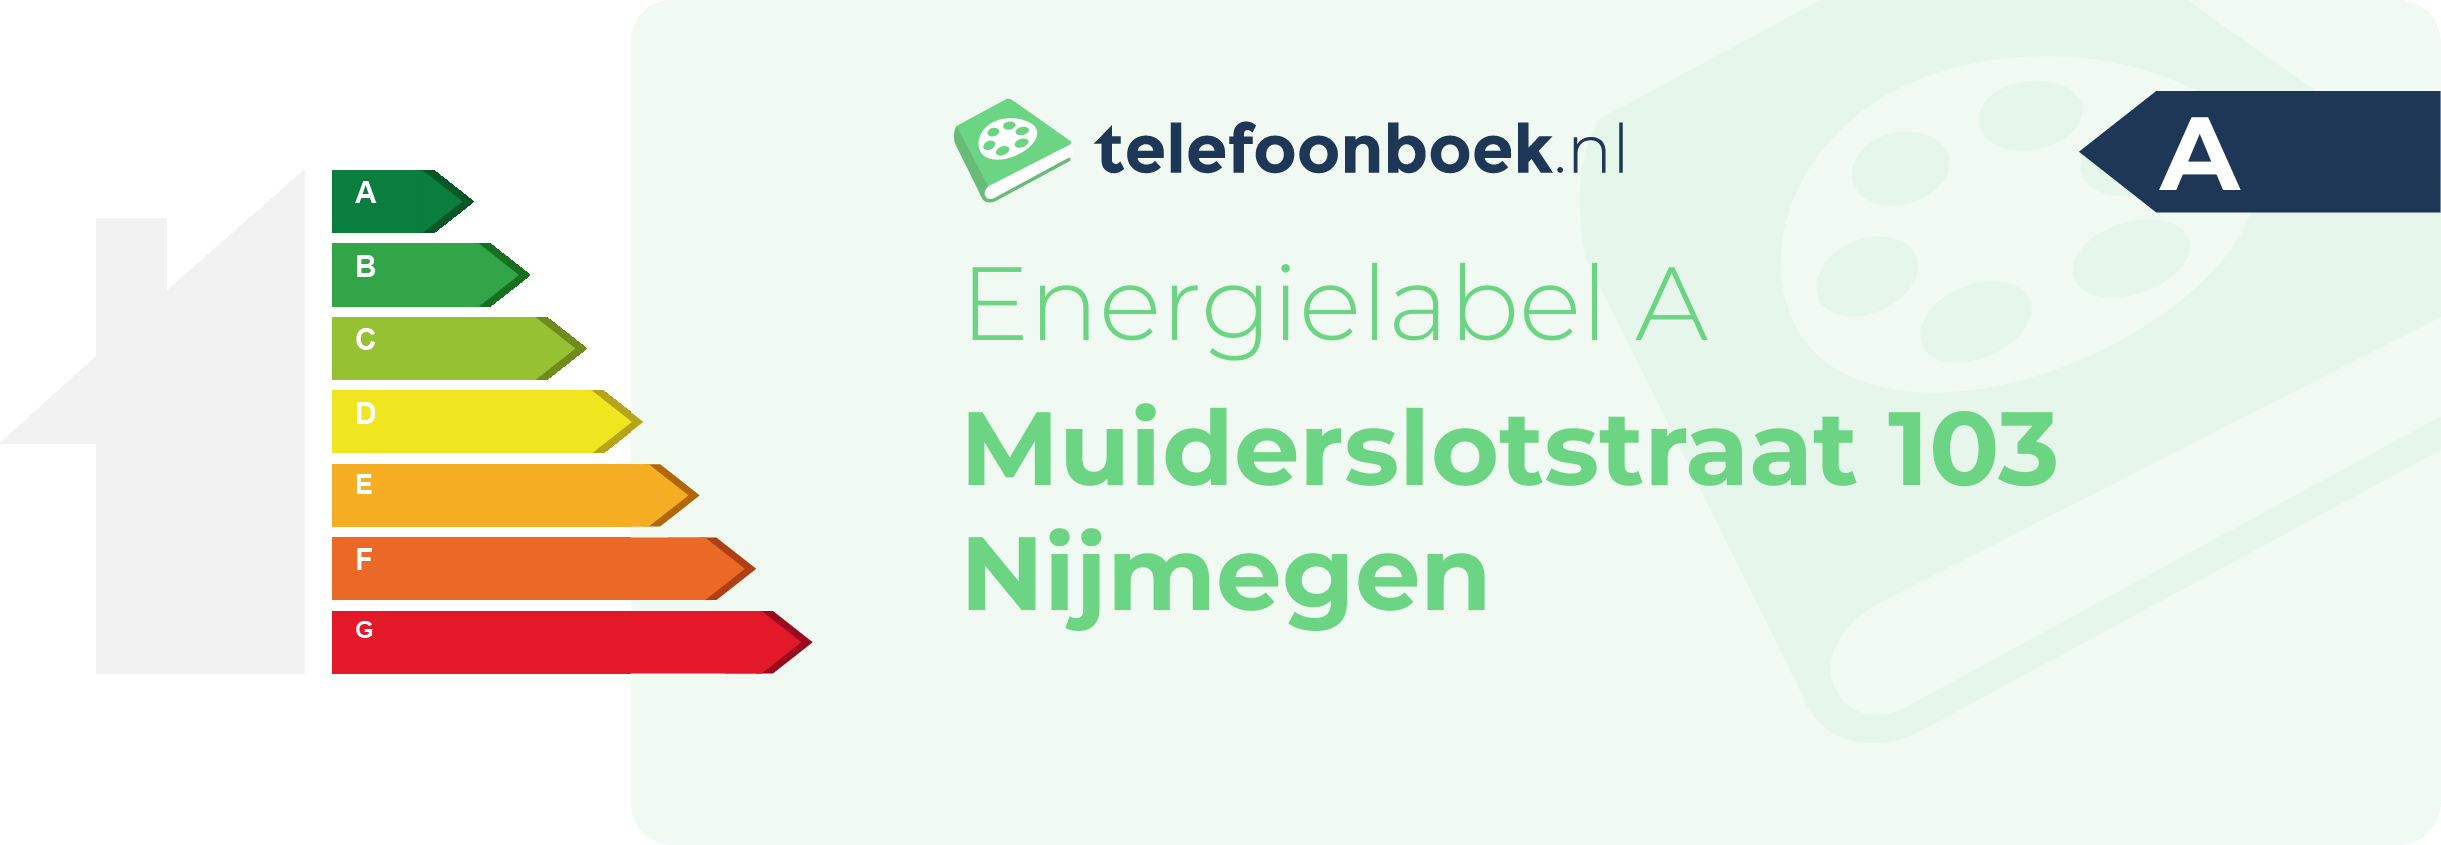 Energielabel Muiderslotstraat 103 Nijmegen